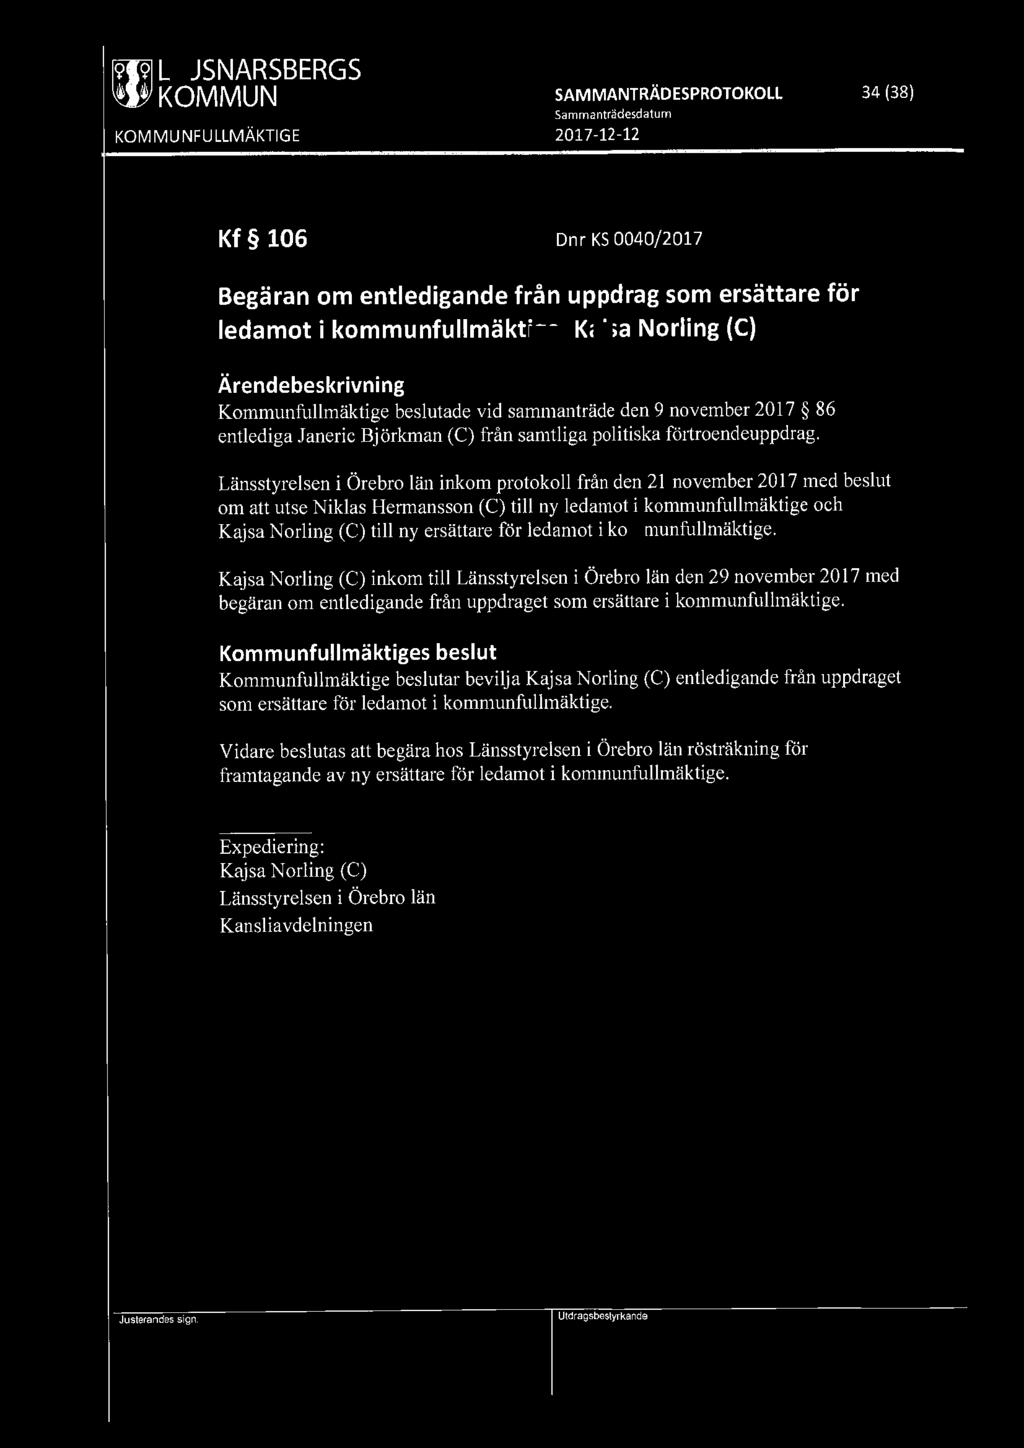 [9191 LJUSNARSBERGS ' ' KOMMUN SAMMANTRÄDESPROTOKOLL 34 (38) Kf 106 Dnr KS 0040/2017 Begäran om entledigande från uppdrag som ersättare för ledamot i kommunfullmäktige, Kajsa Norling (C)